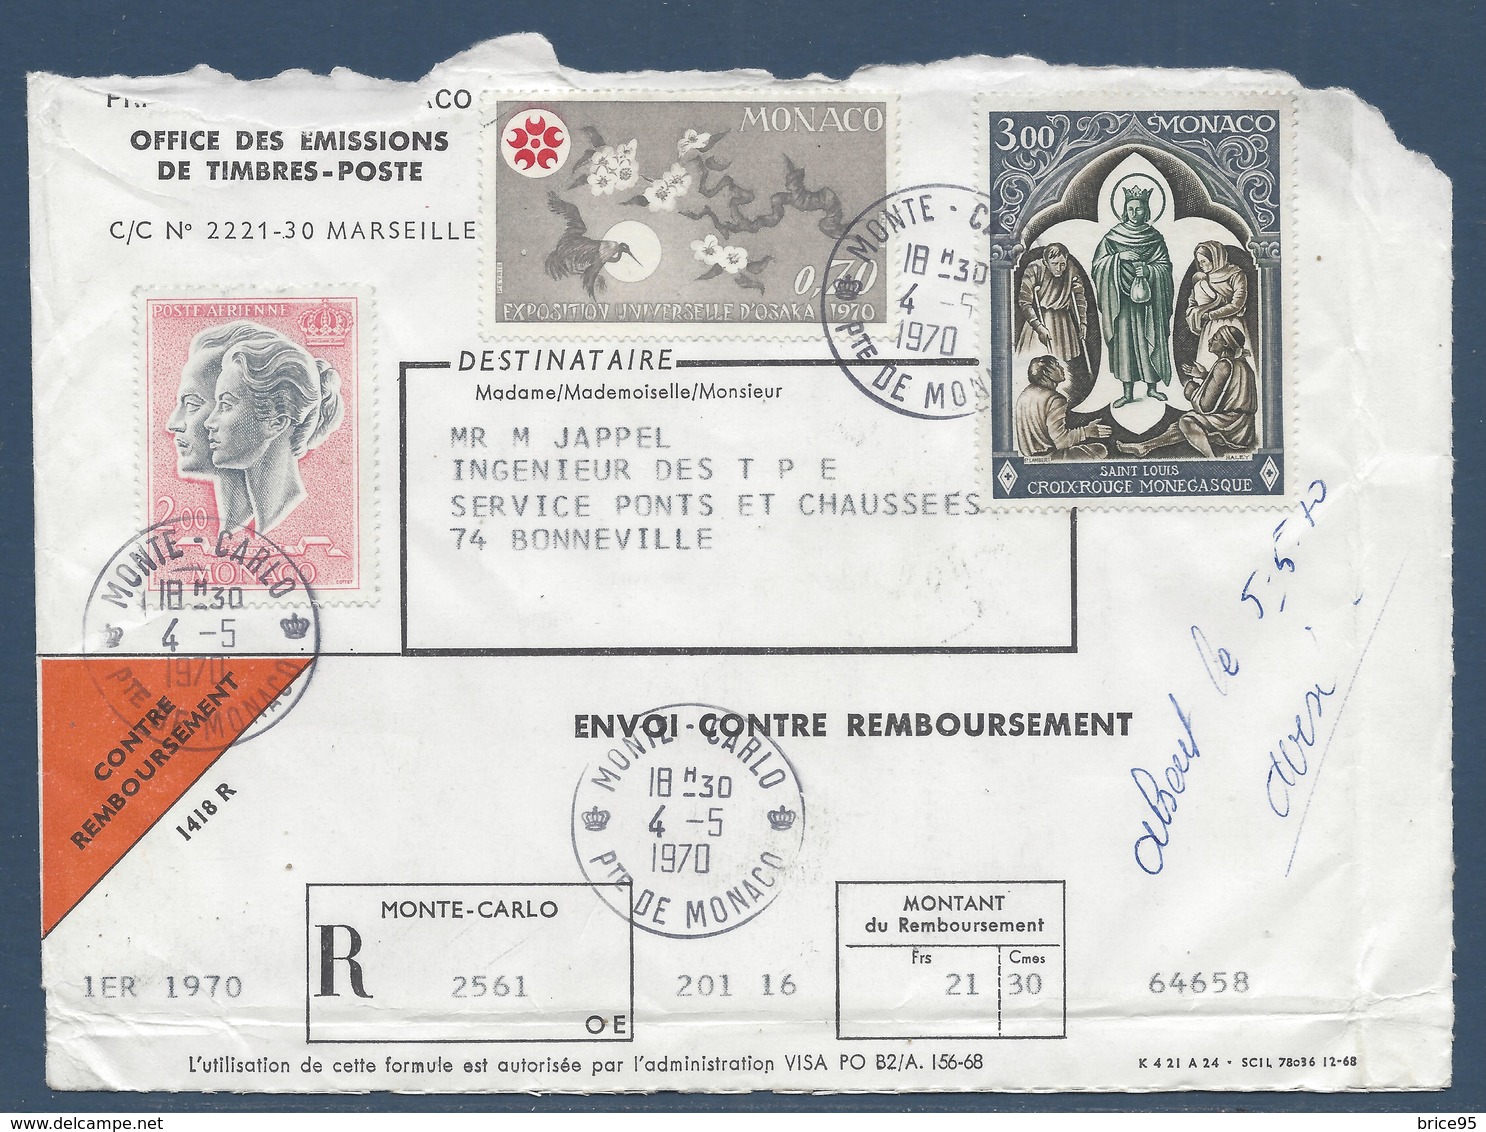 Monaco - YT N° 818, 825 Et PA N° 87 - Lettre Pour Un Envoi Contre Remboursement - 1970 - Briefe U. Dokumente